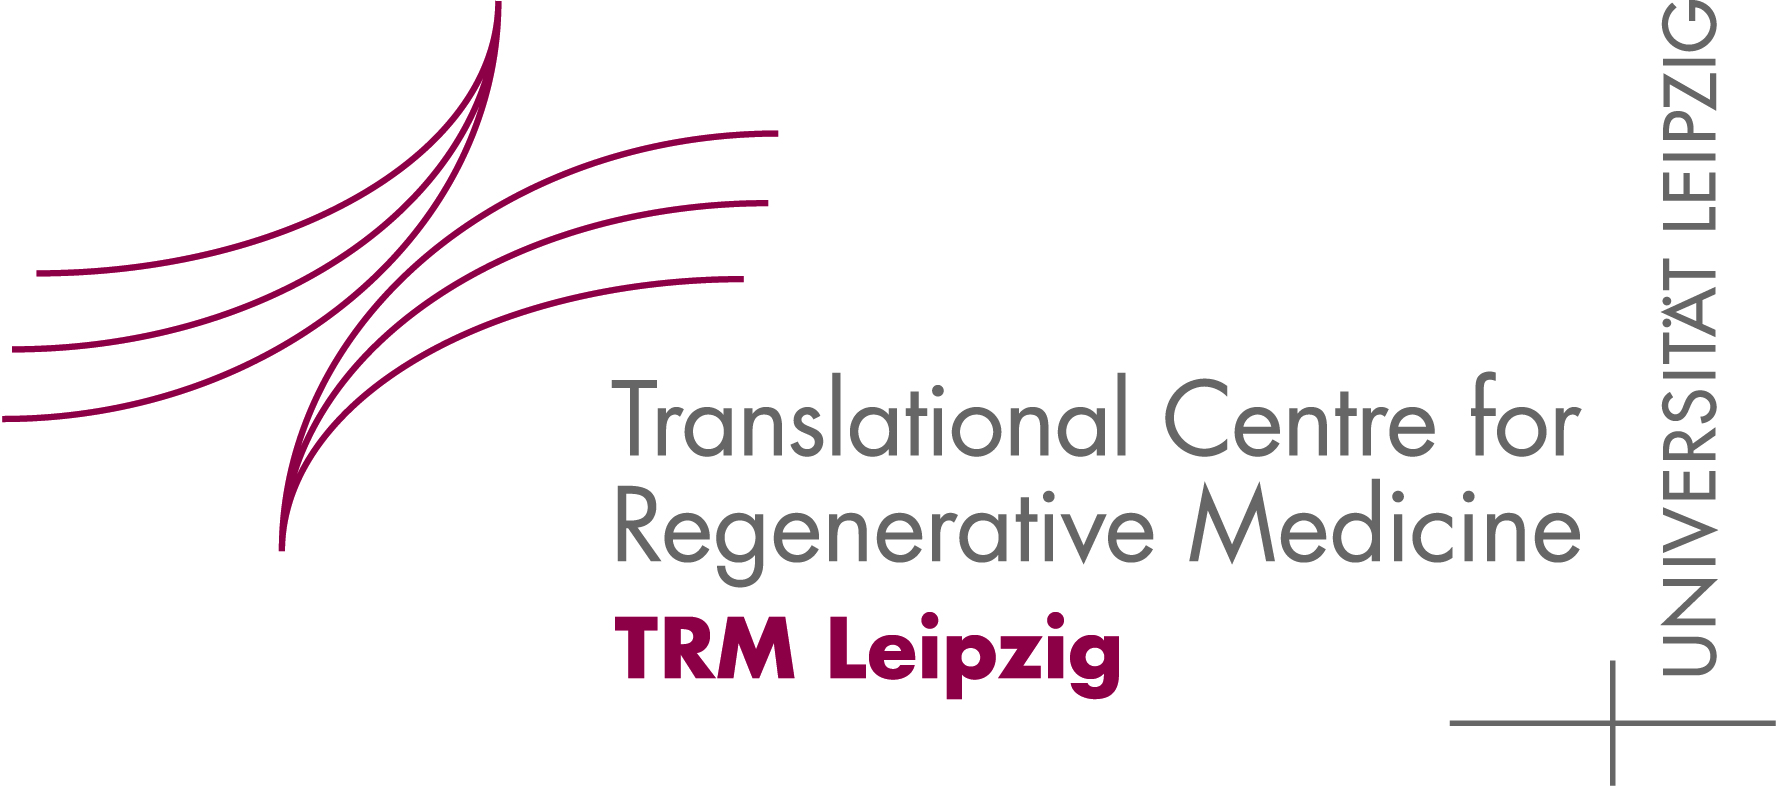 TRM-Leipzig